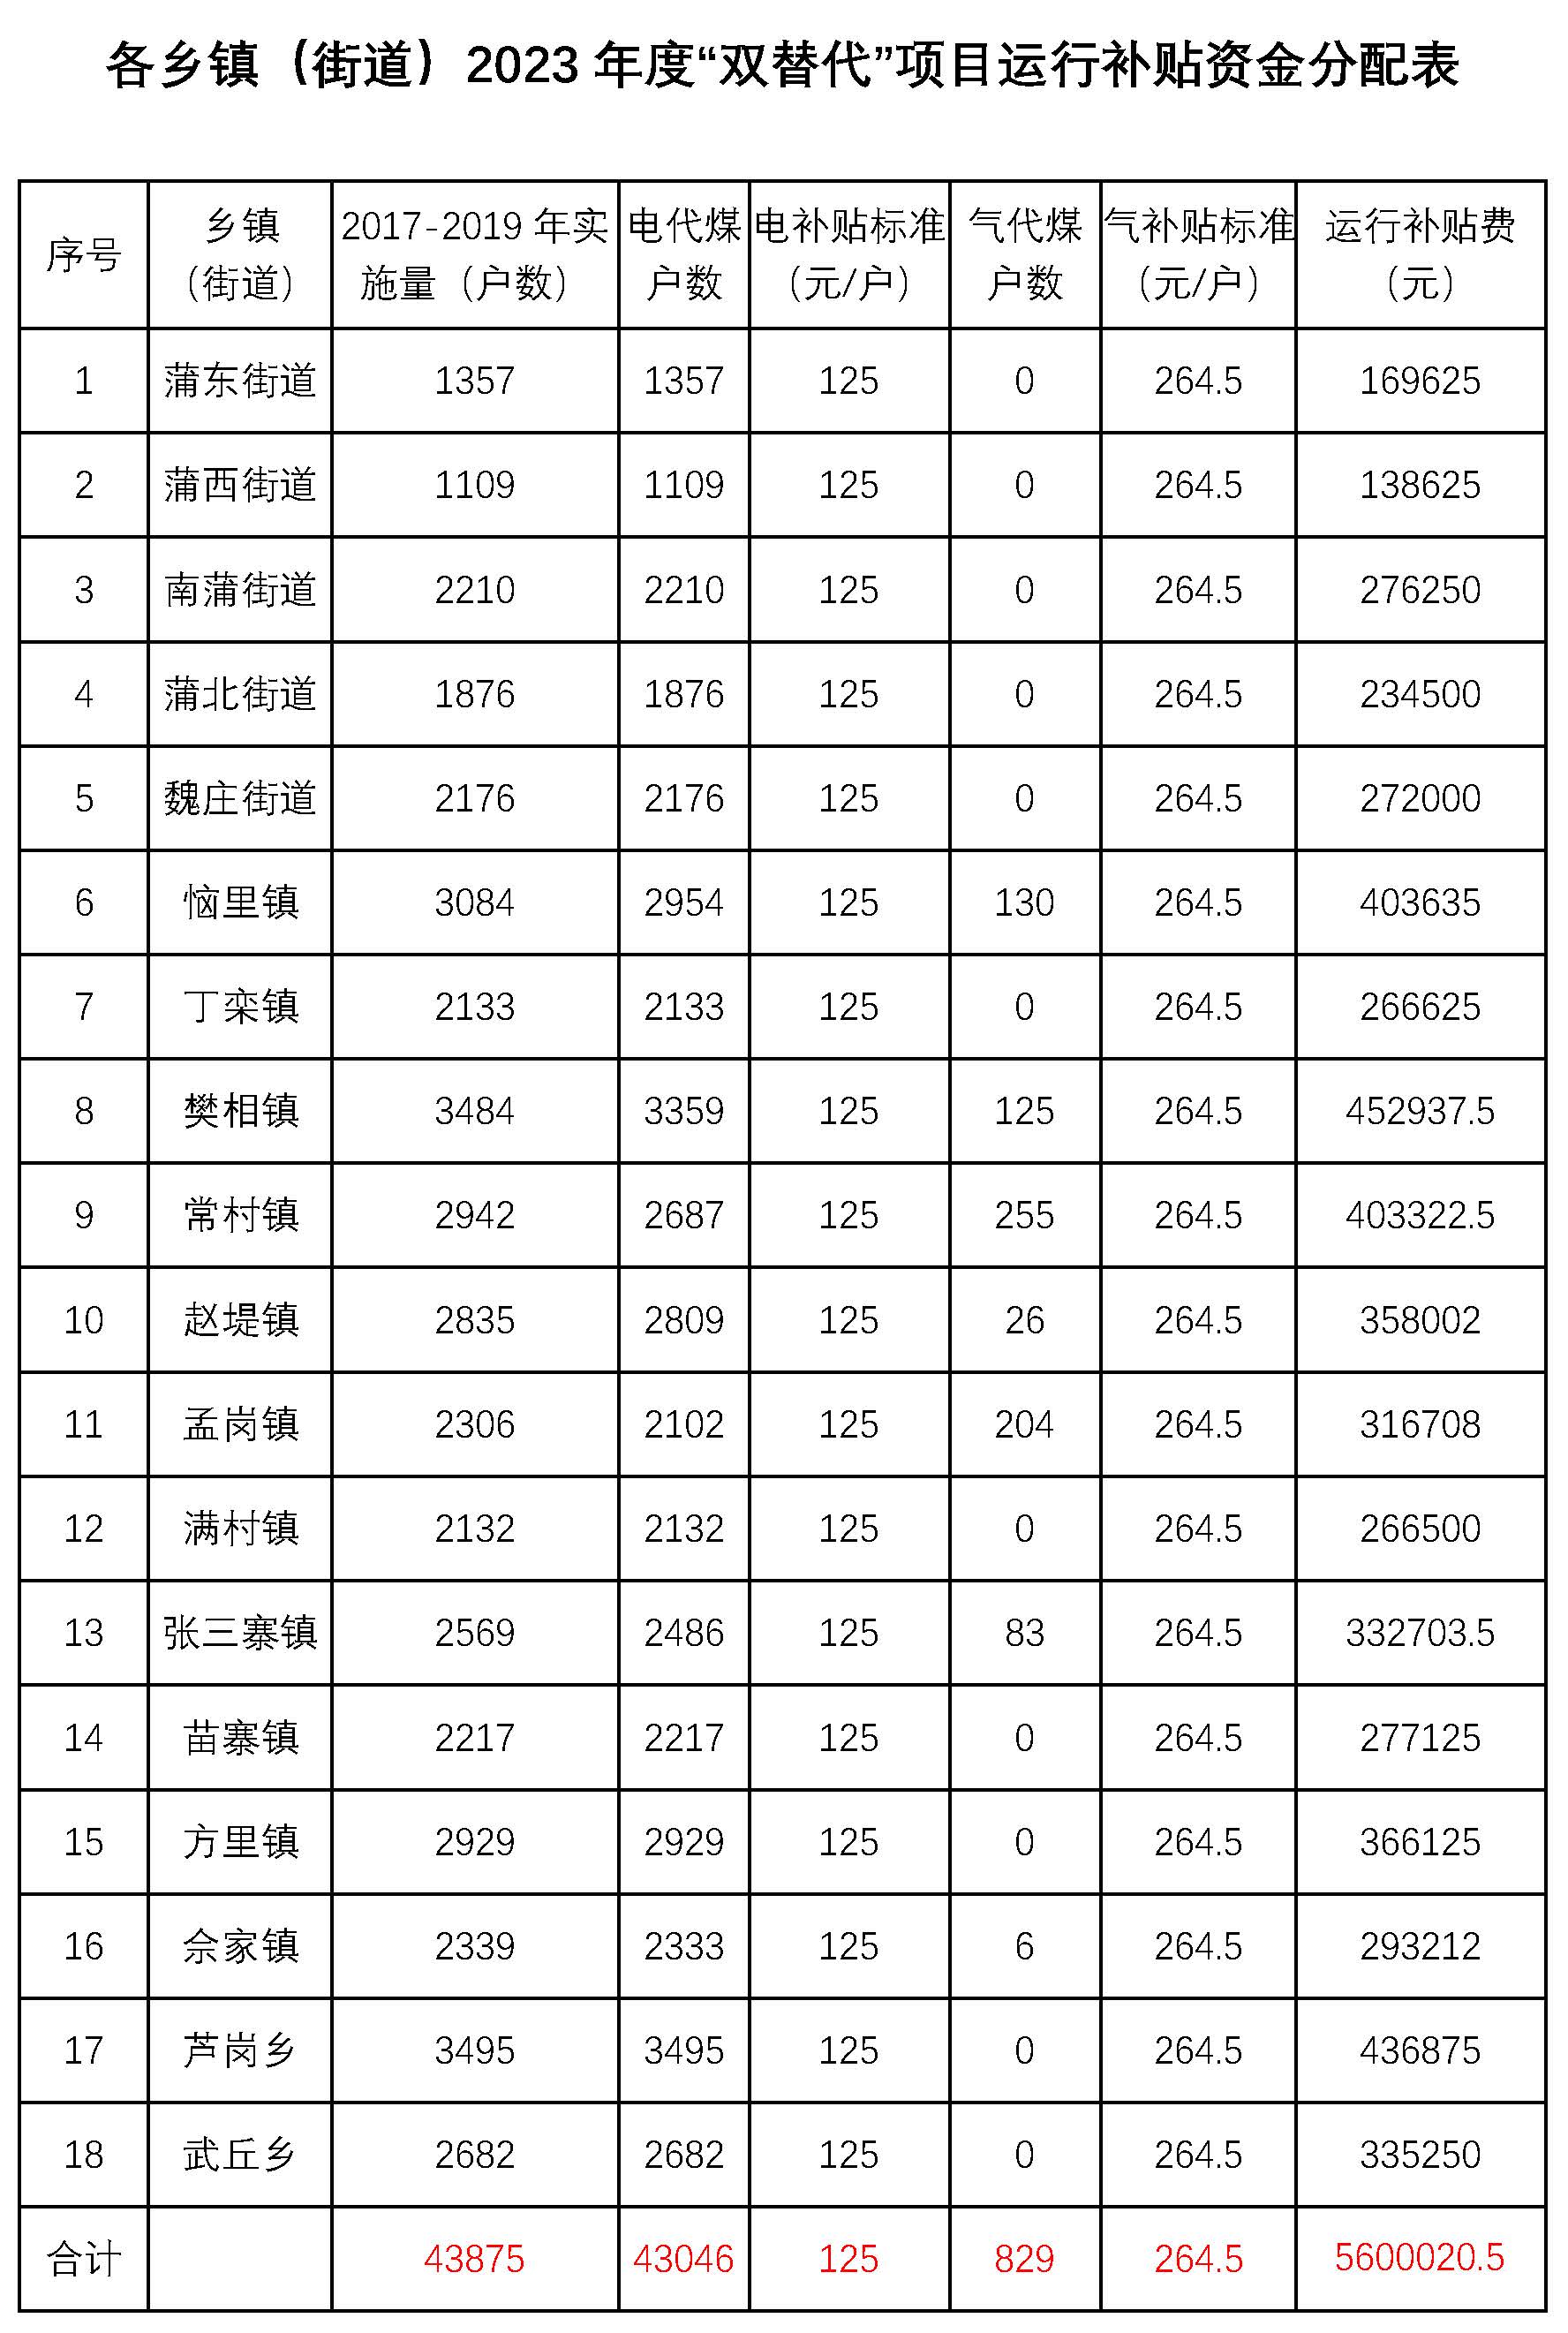 河南长垣市：5600020.5元农村清洁取暖运营补贴资金发放